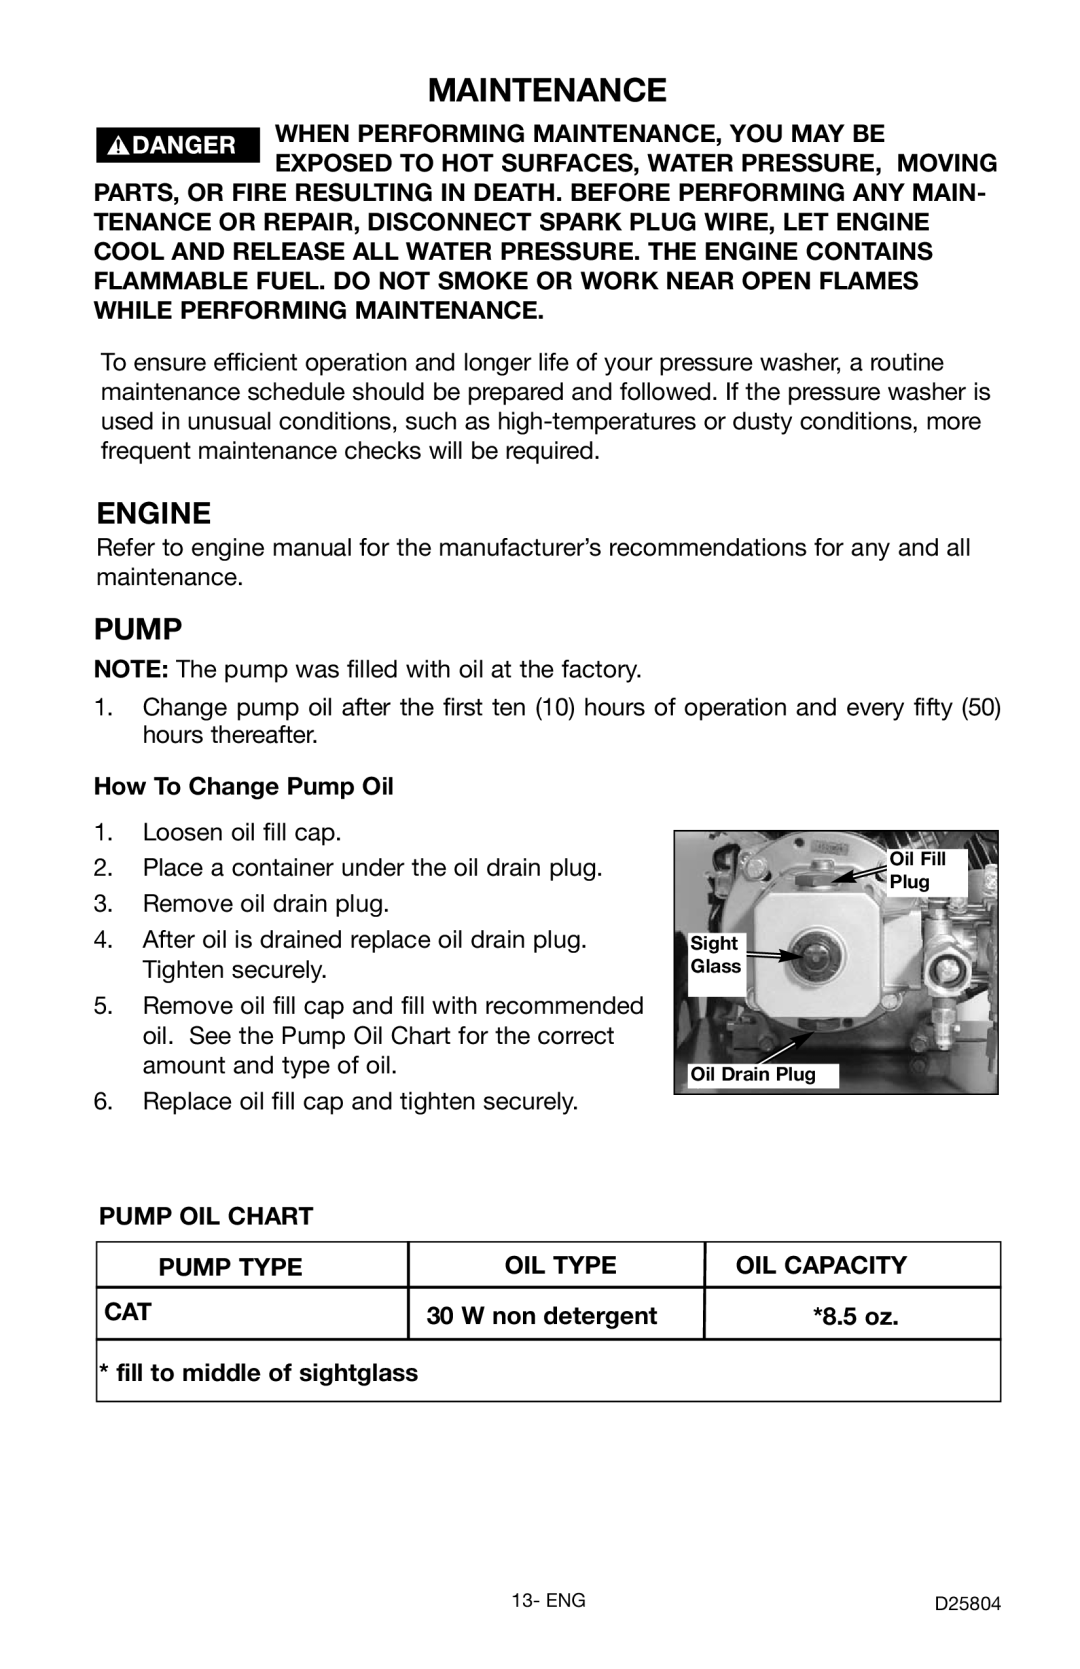 Porter-Cable PCH2600C, D25804-025-1 instruction manual Maintenance, Engine, Pump 